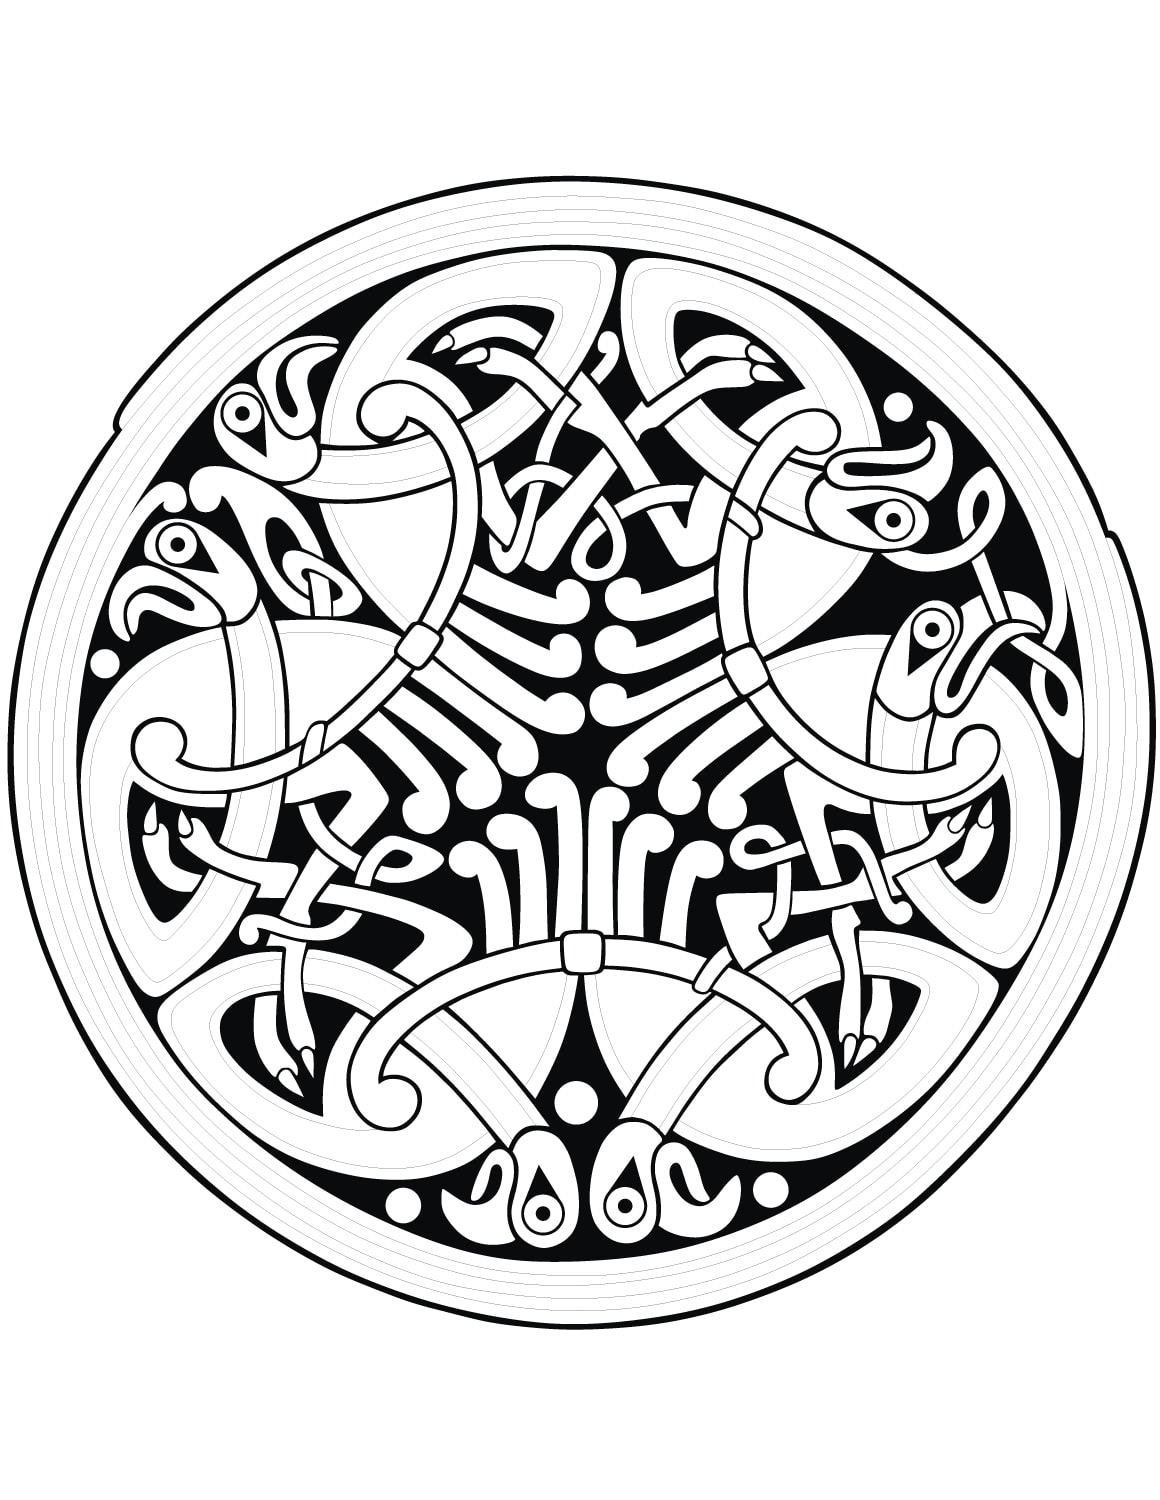 Un Mandala aux formes celtiques qui sort de l'ordinaire, qui vous permettra de passer un bon moment de coloriage, sans trop vous compliquer la vie à colorier de toute petites zones.